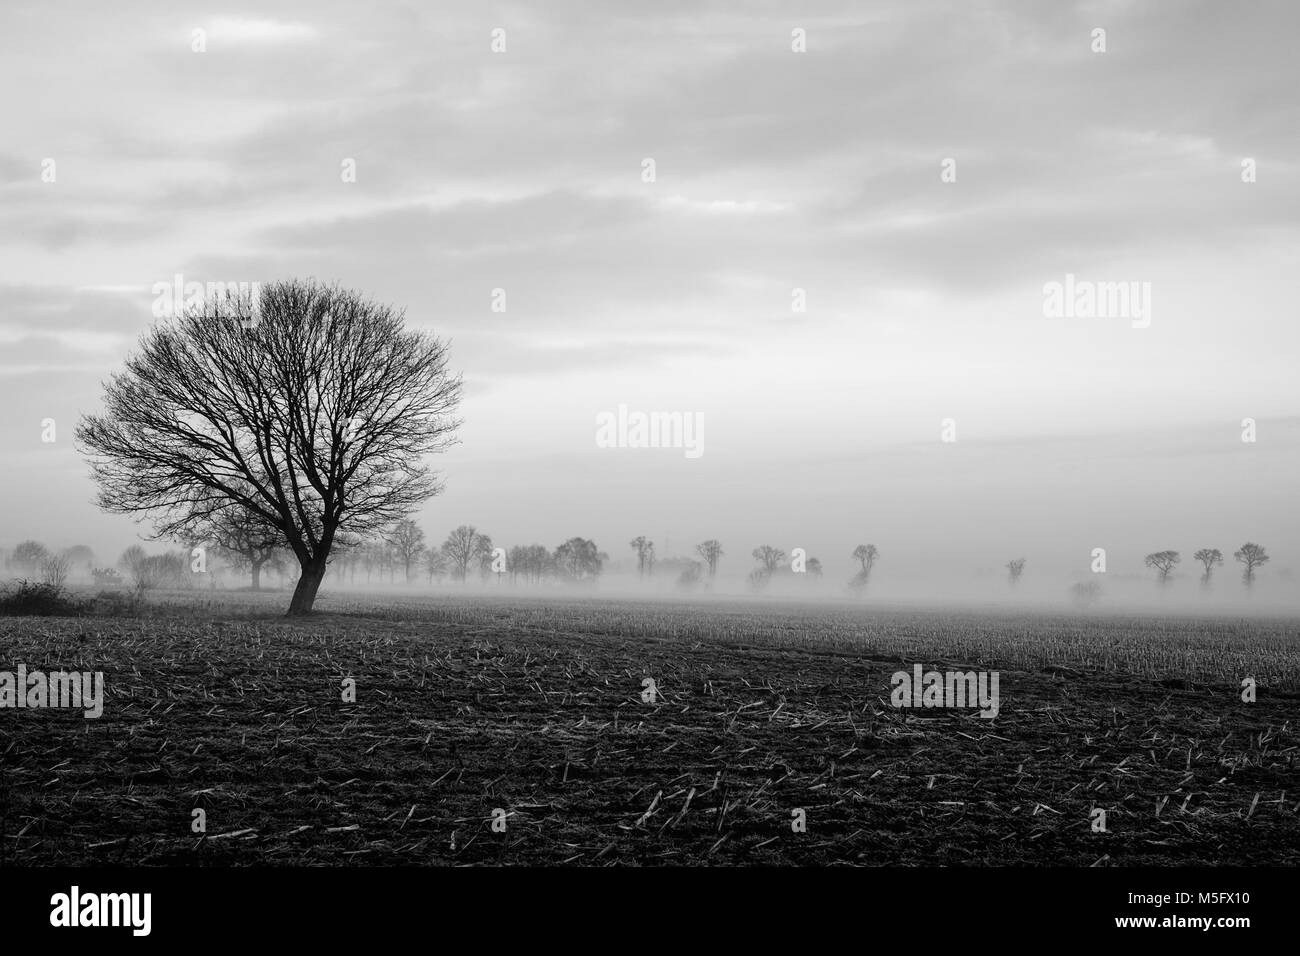 Immagine in bianco e nero di un solitario albero su di un campo con un cielo tempestoso su un paesaggio rurale paesaggio Foto Stock